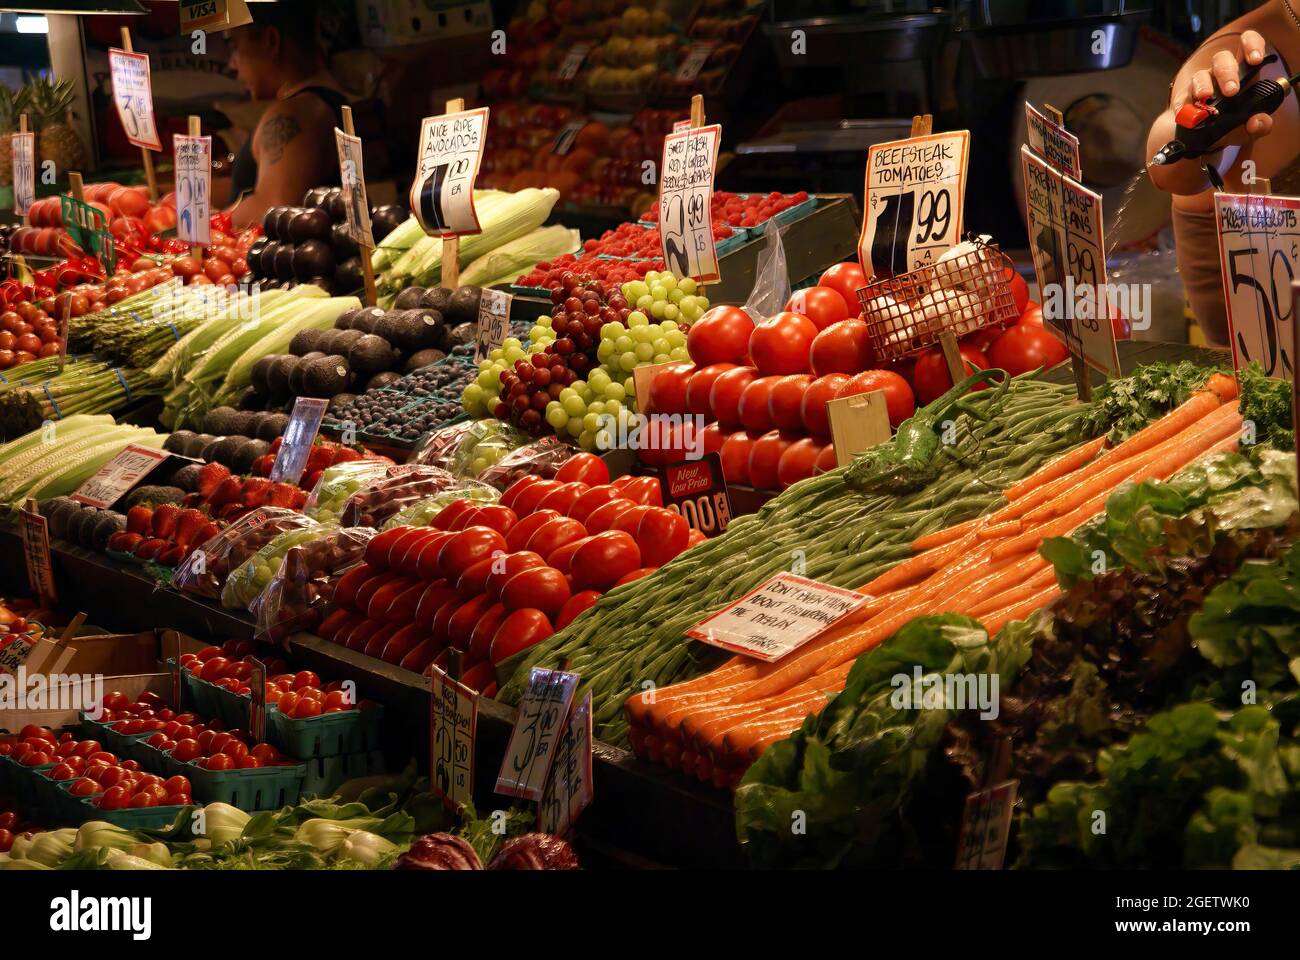 Vegetable and fruit market at  fresh produce stalls,Pike Place Market, Seattle, Washington Stock Photo